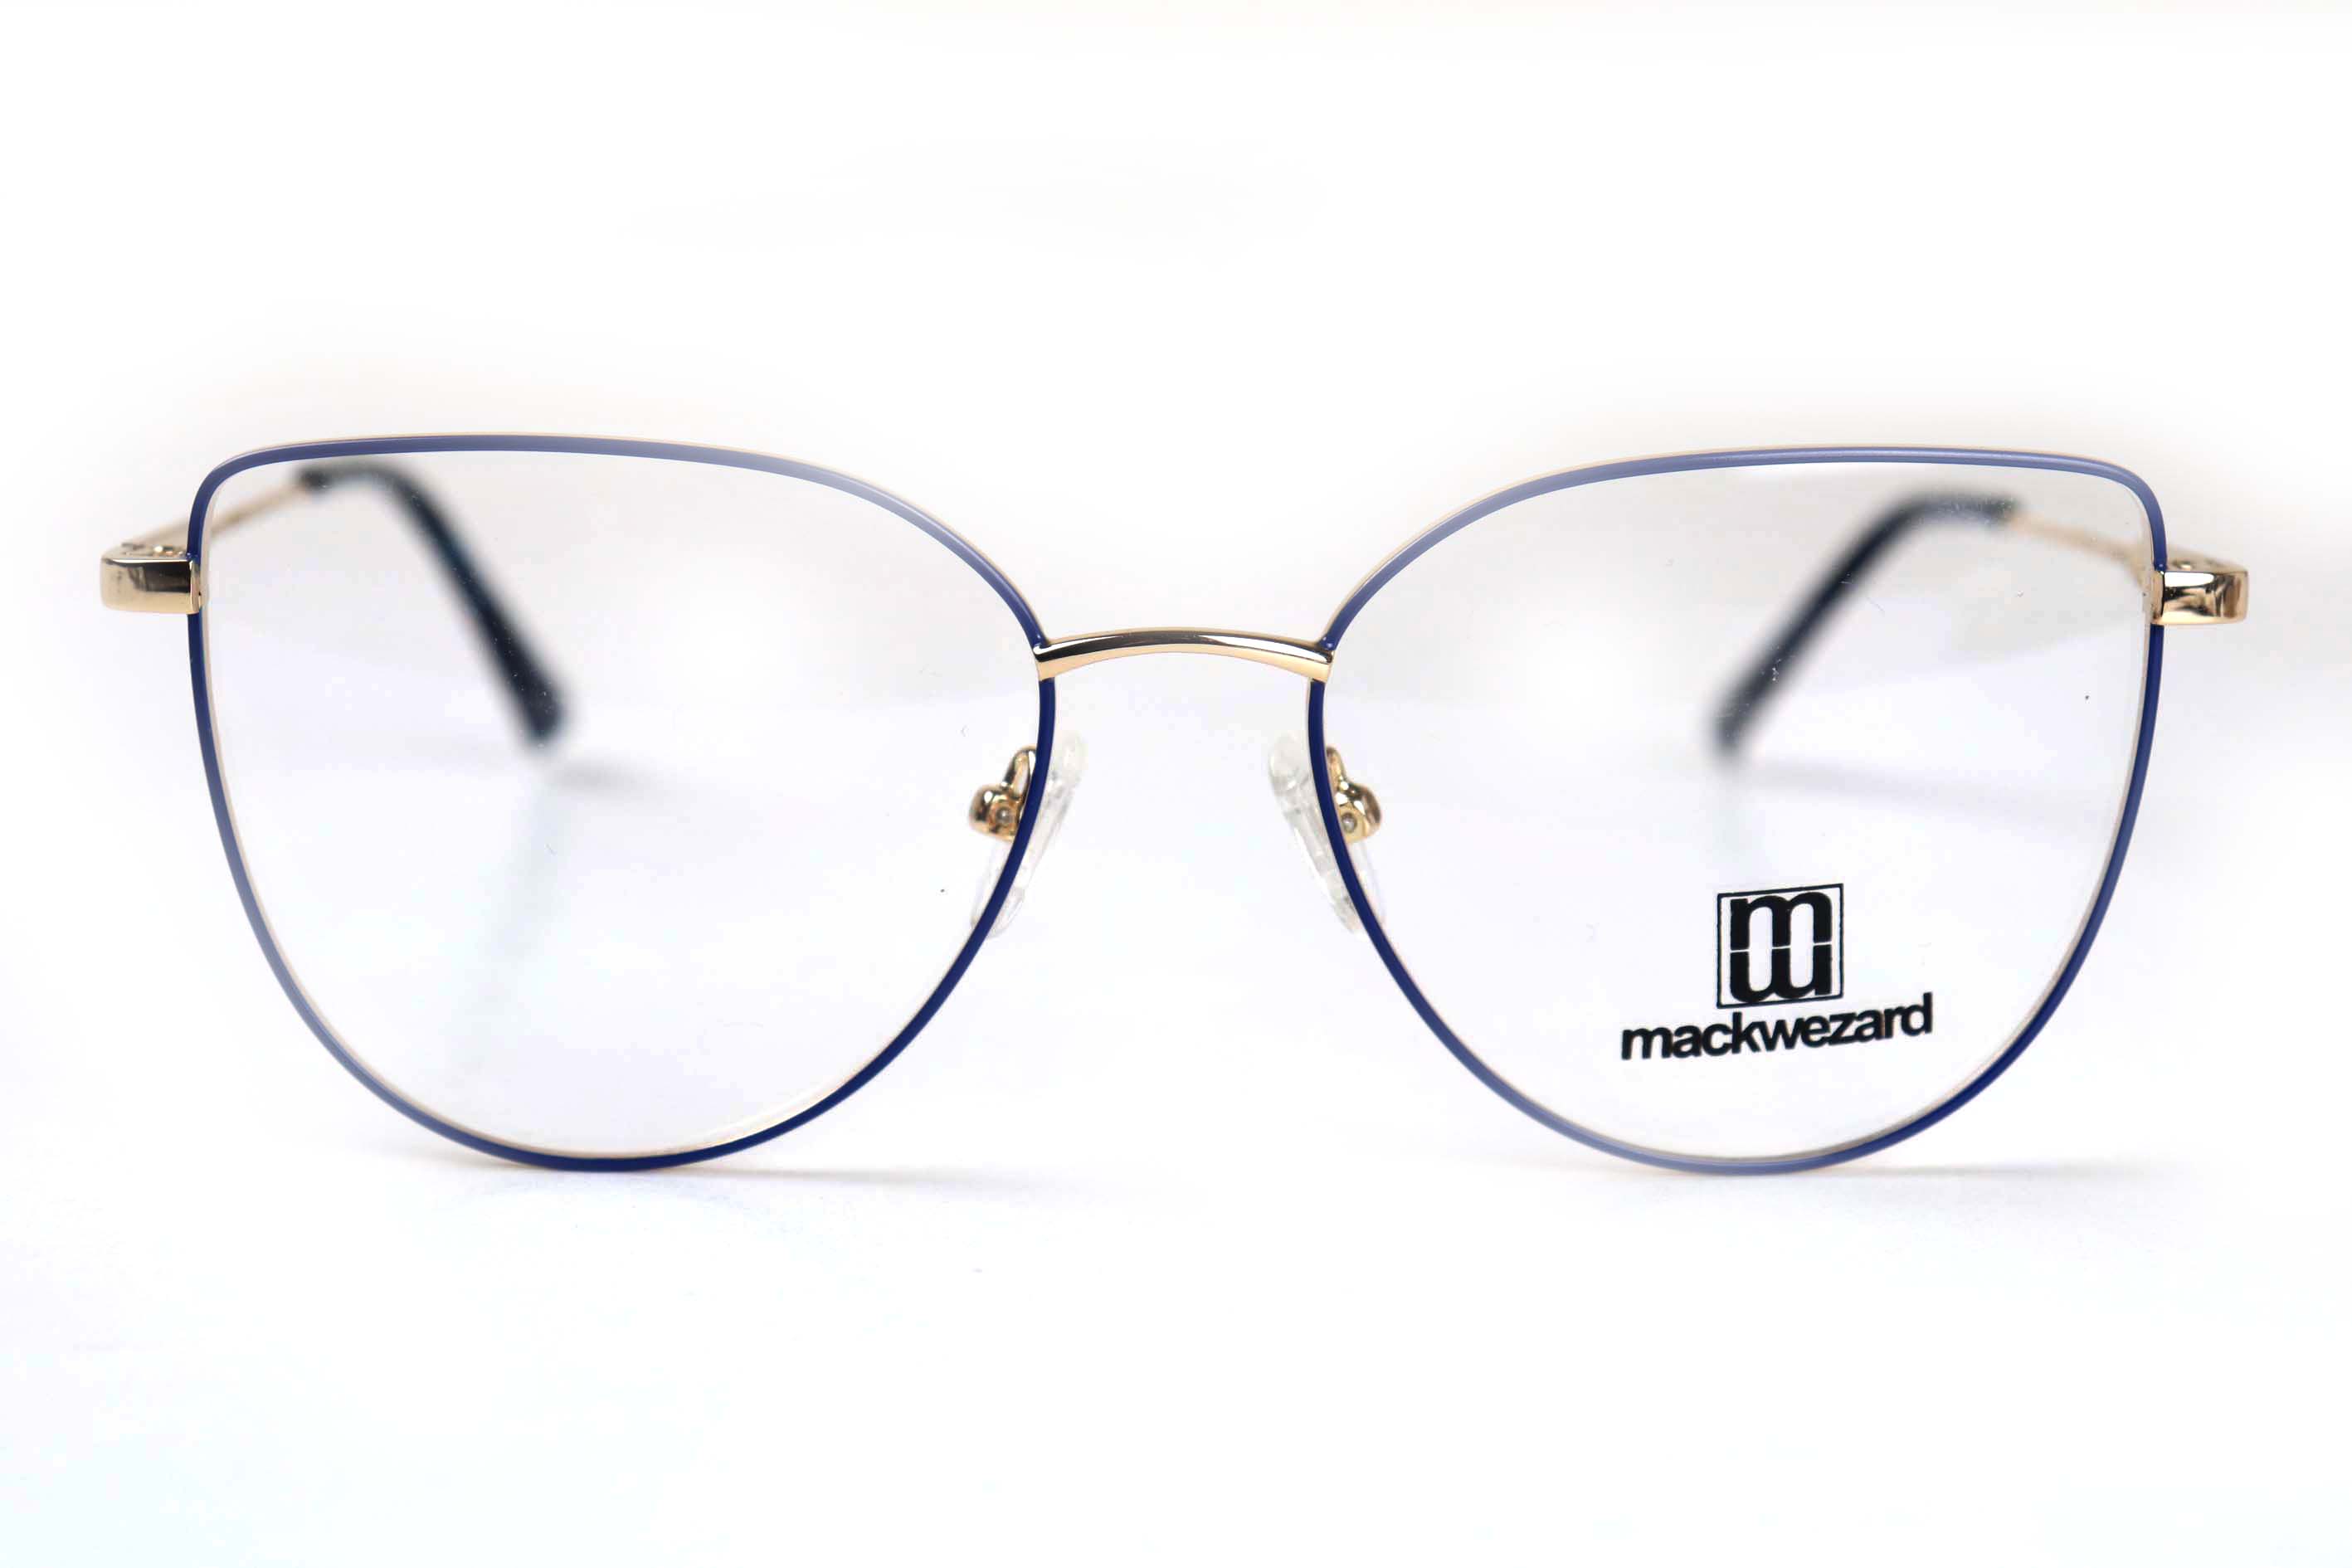  Mackwezard Eyeglasses- 1007-C5-53-18-140